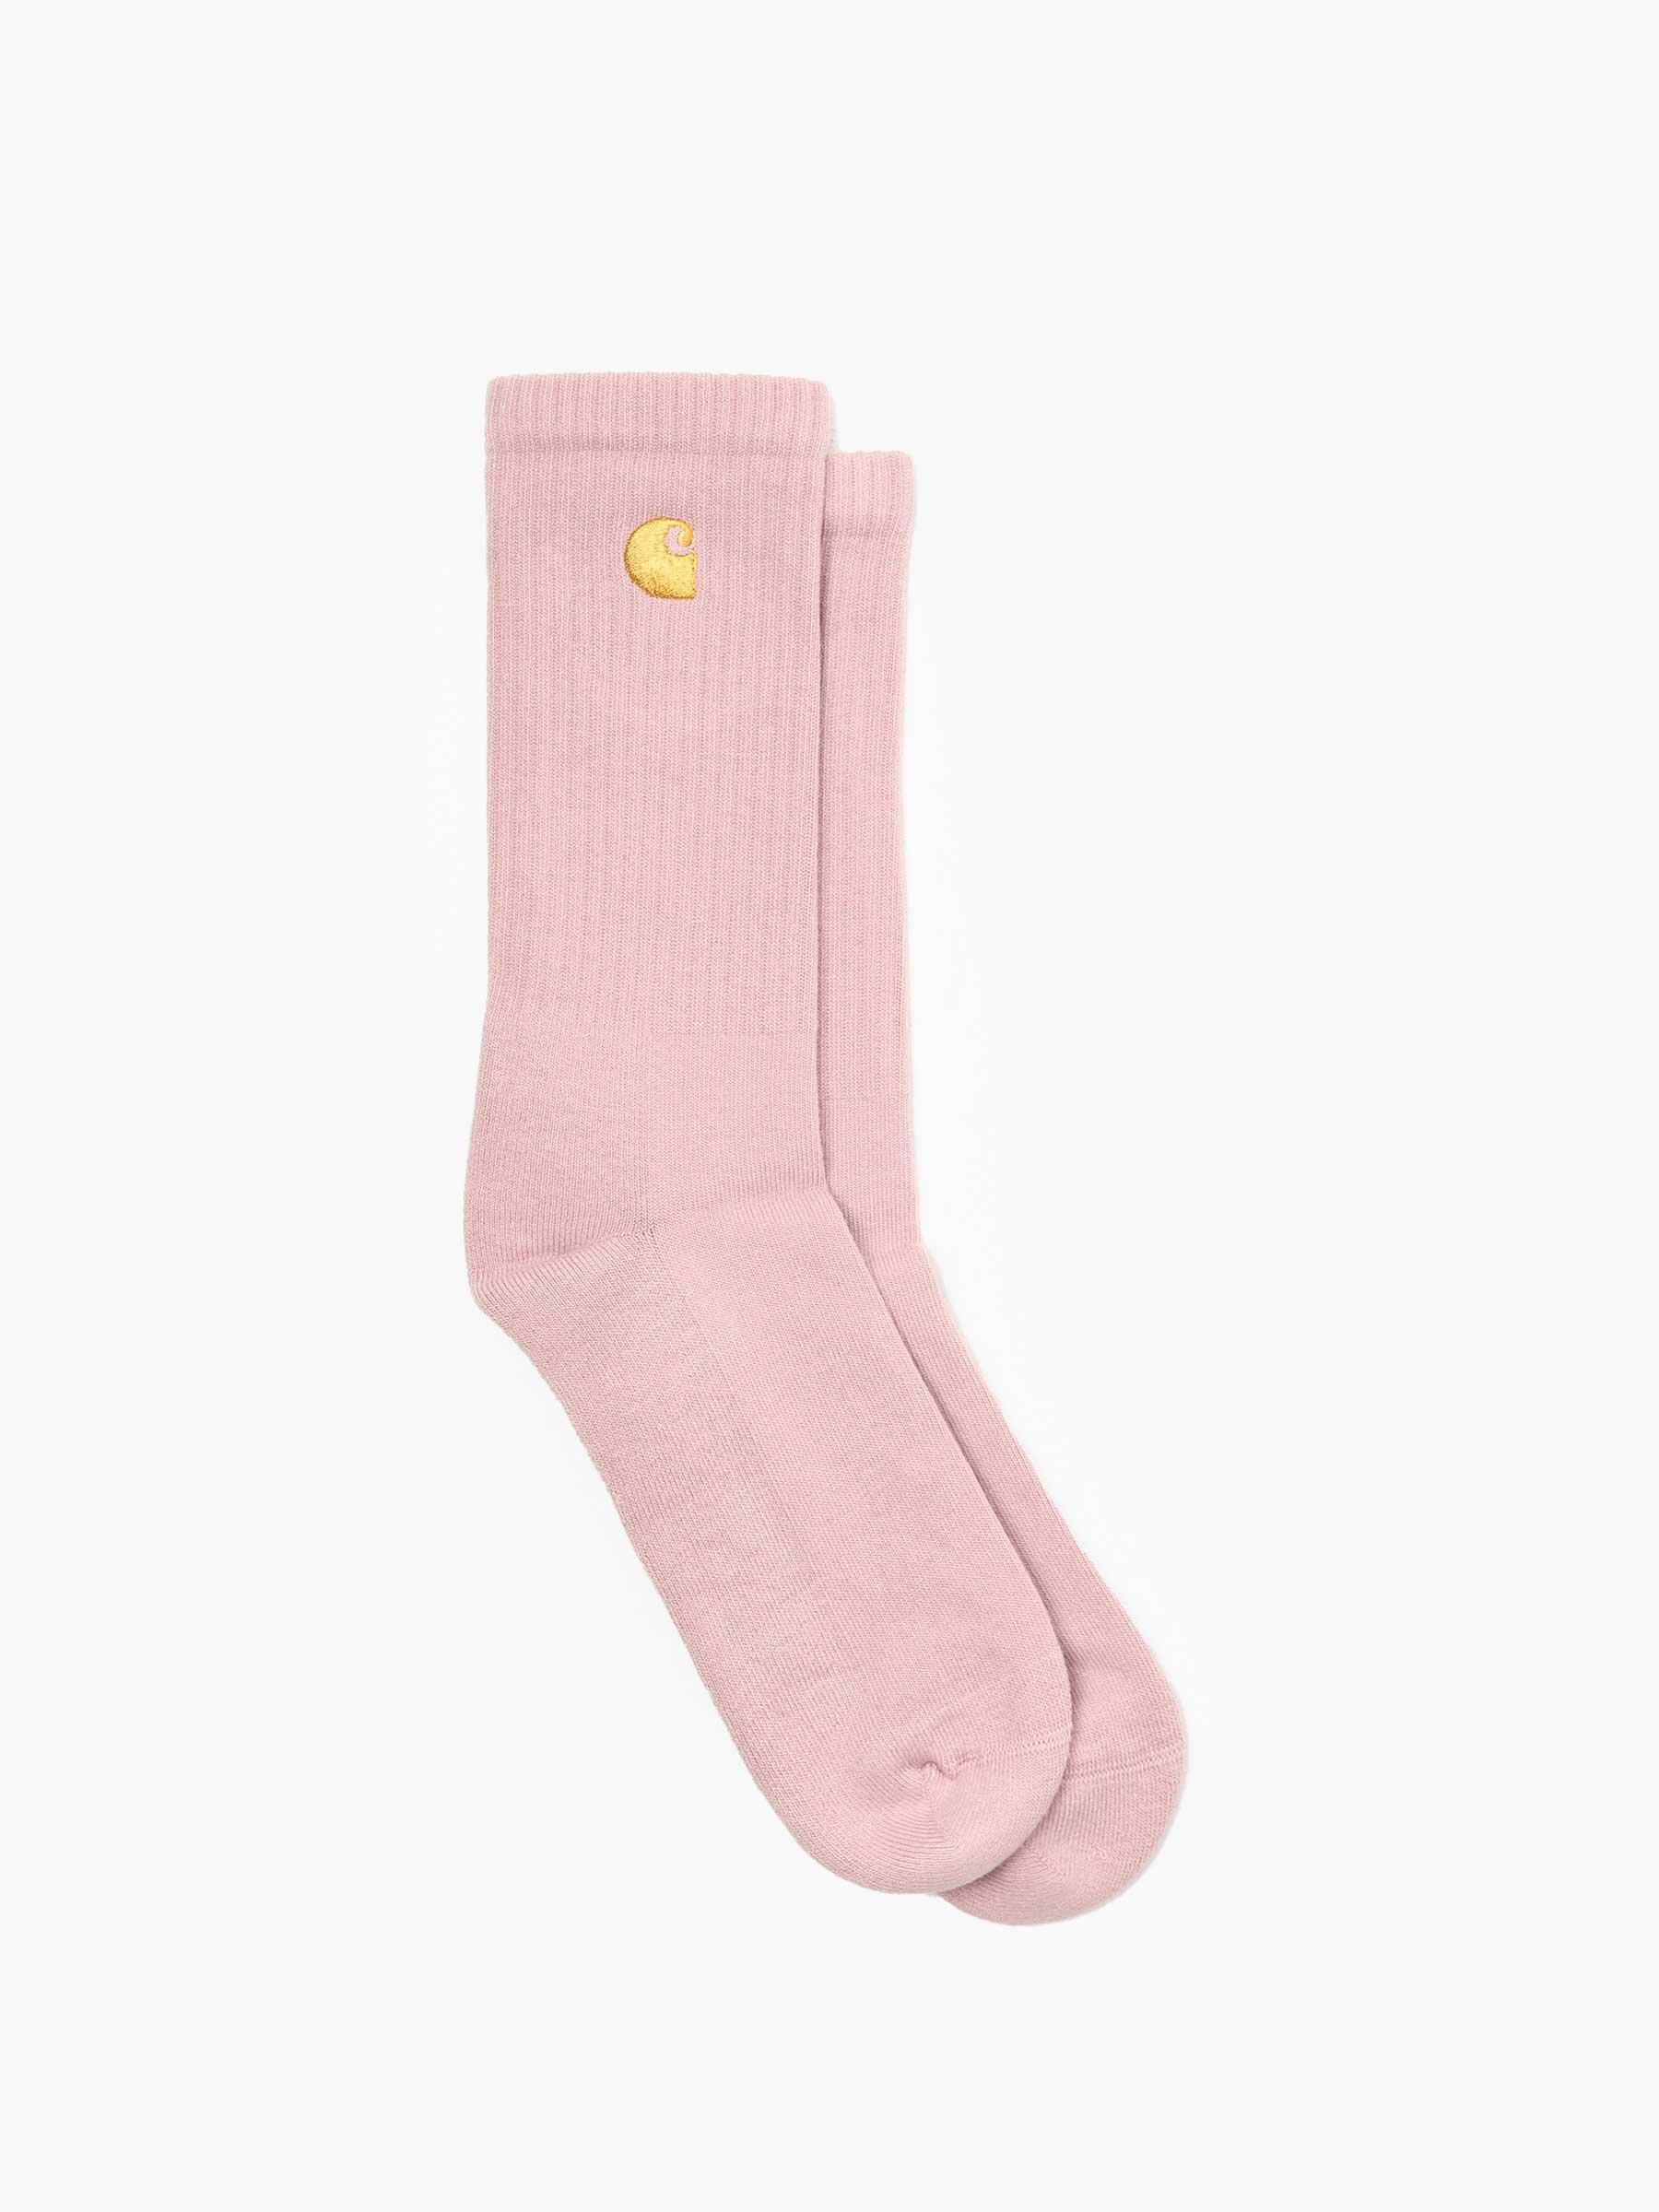 Chase Socks Glassy Pink Gold I029421-24CXX